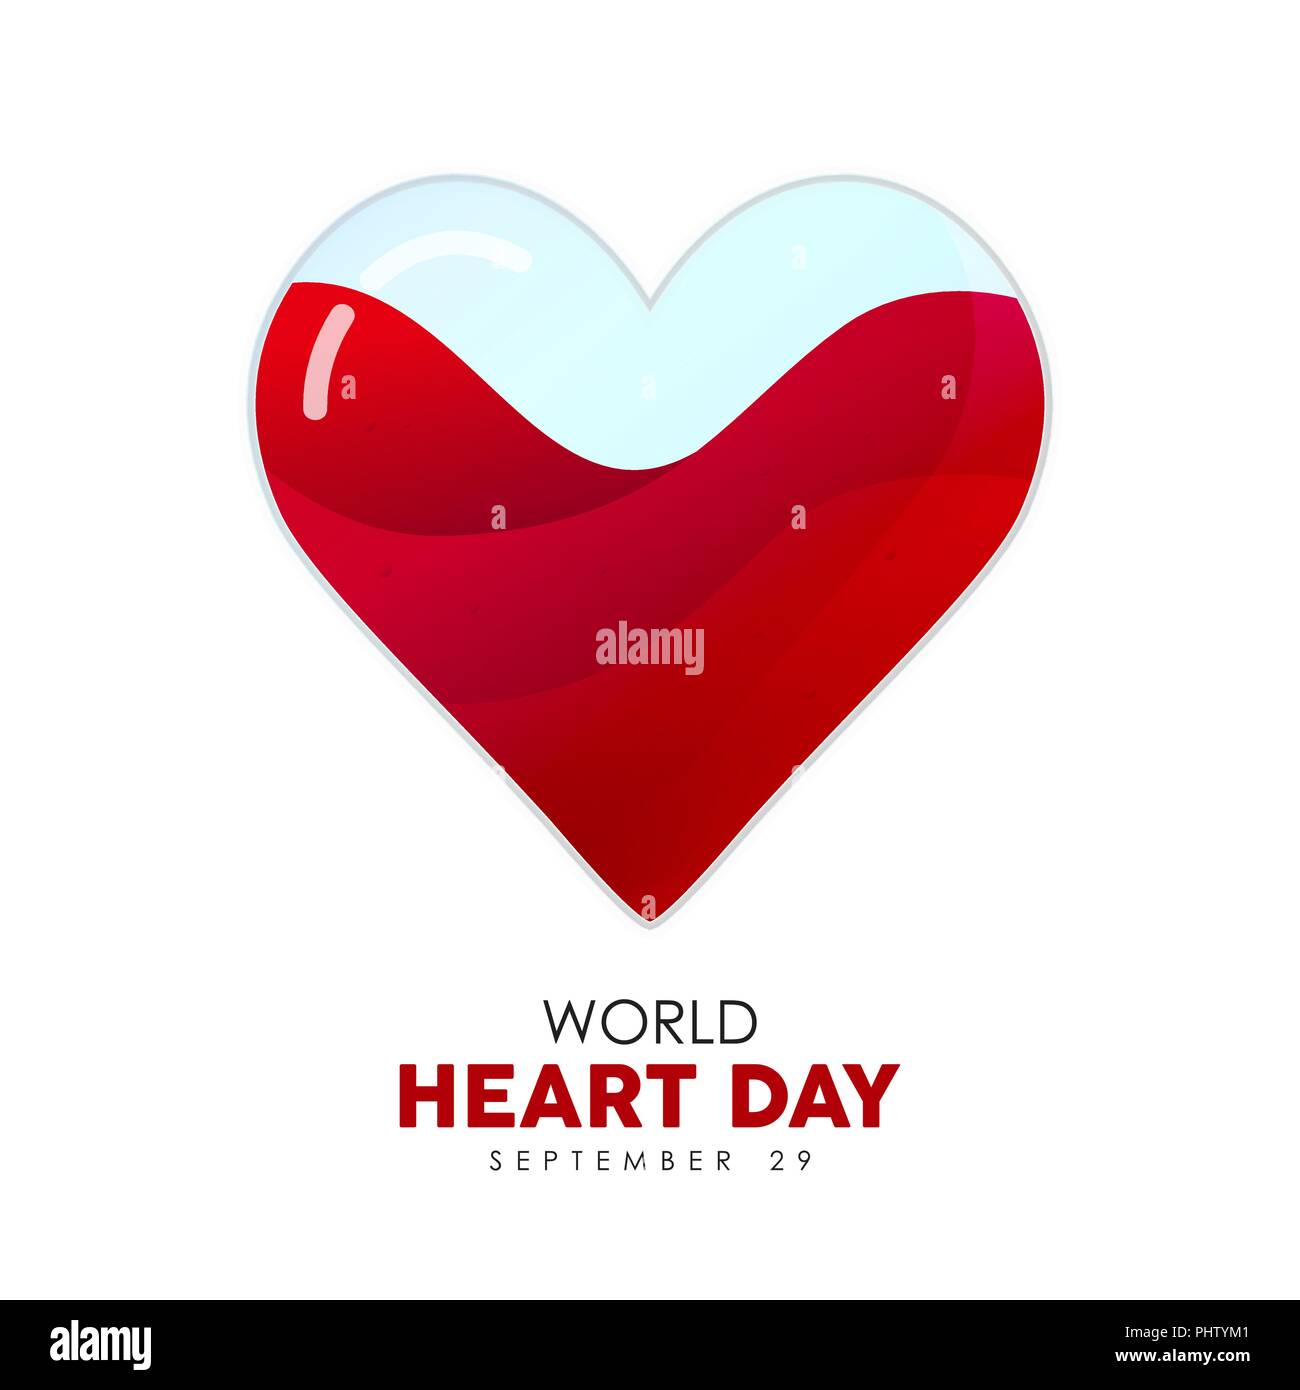 World Heart Day Abbildung: Rot heartshape für Health Care das Bewusstsein und die Unterstützung. EPS 10 Vektor. Stock Vektor